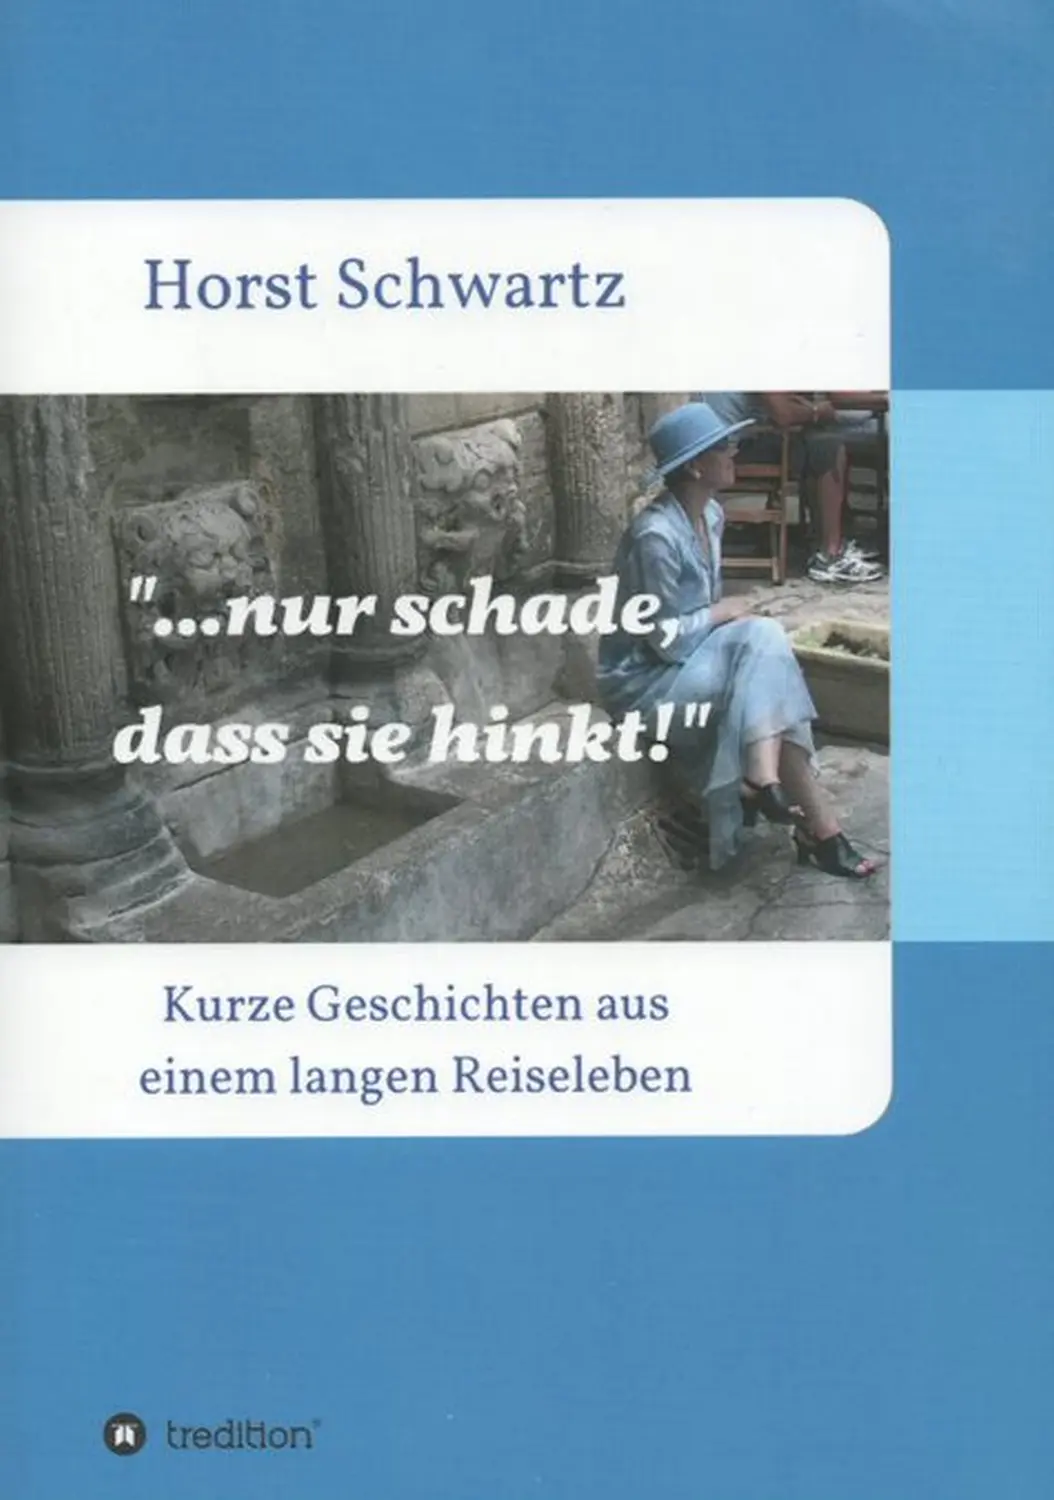 Buch von Horst Schwarz